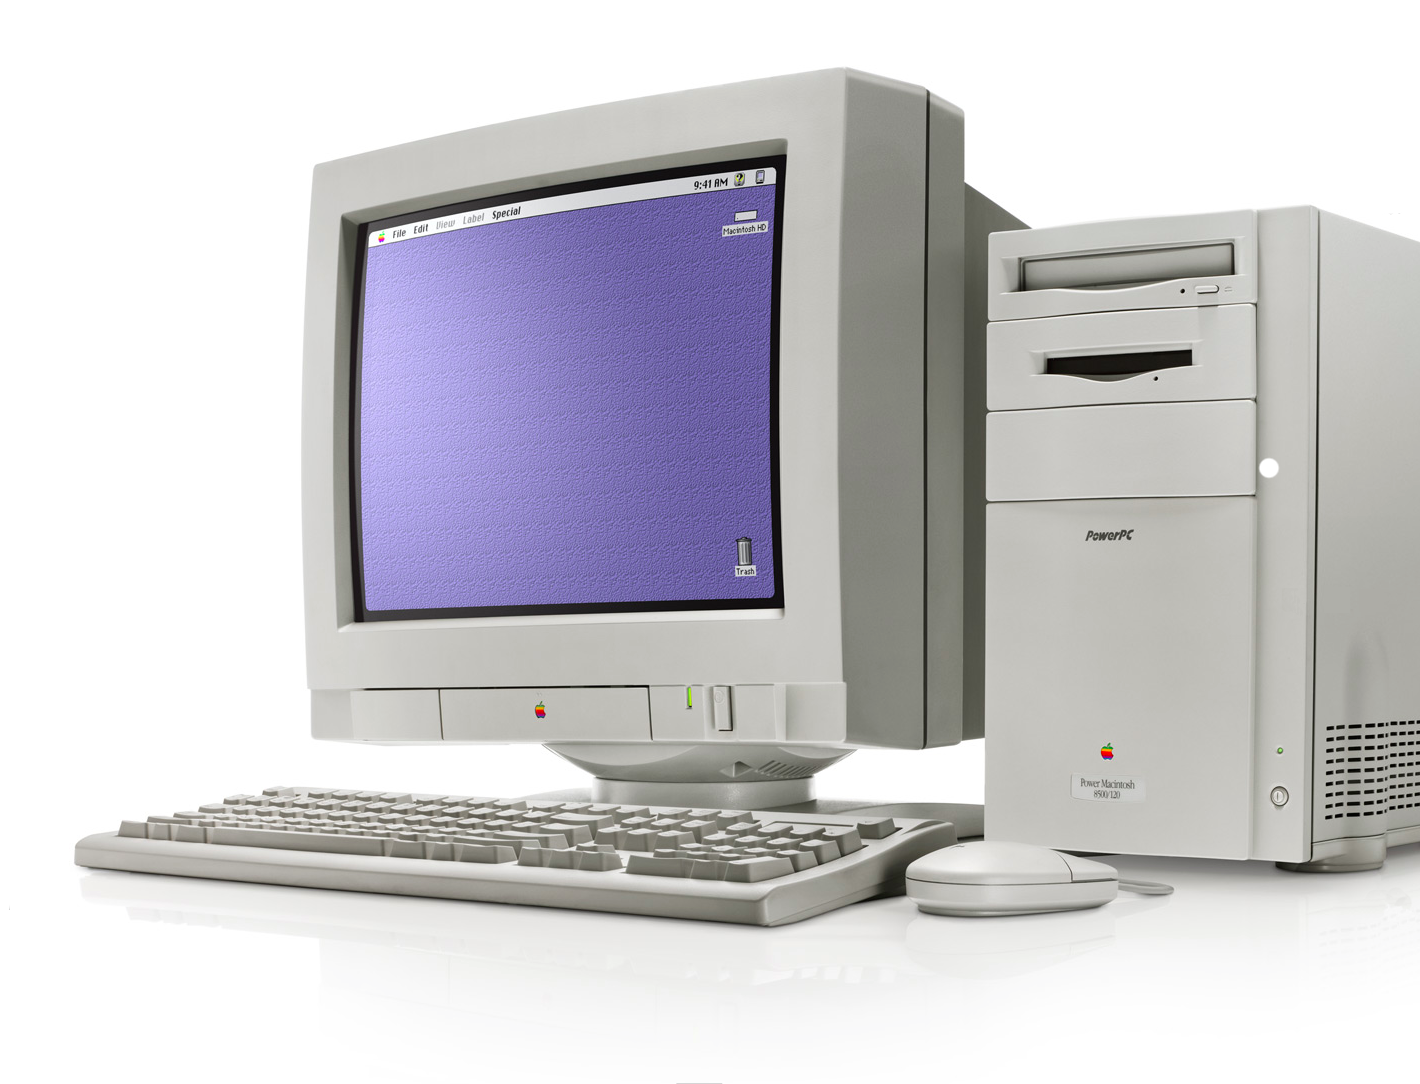 8 персональные компьютеры. Стационарный компьютер. Старый компьютер. Старинный компьютер. Монитор для компьютера 2000 года.